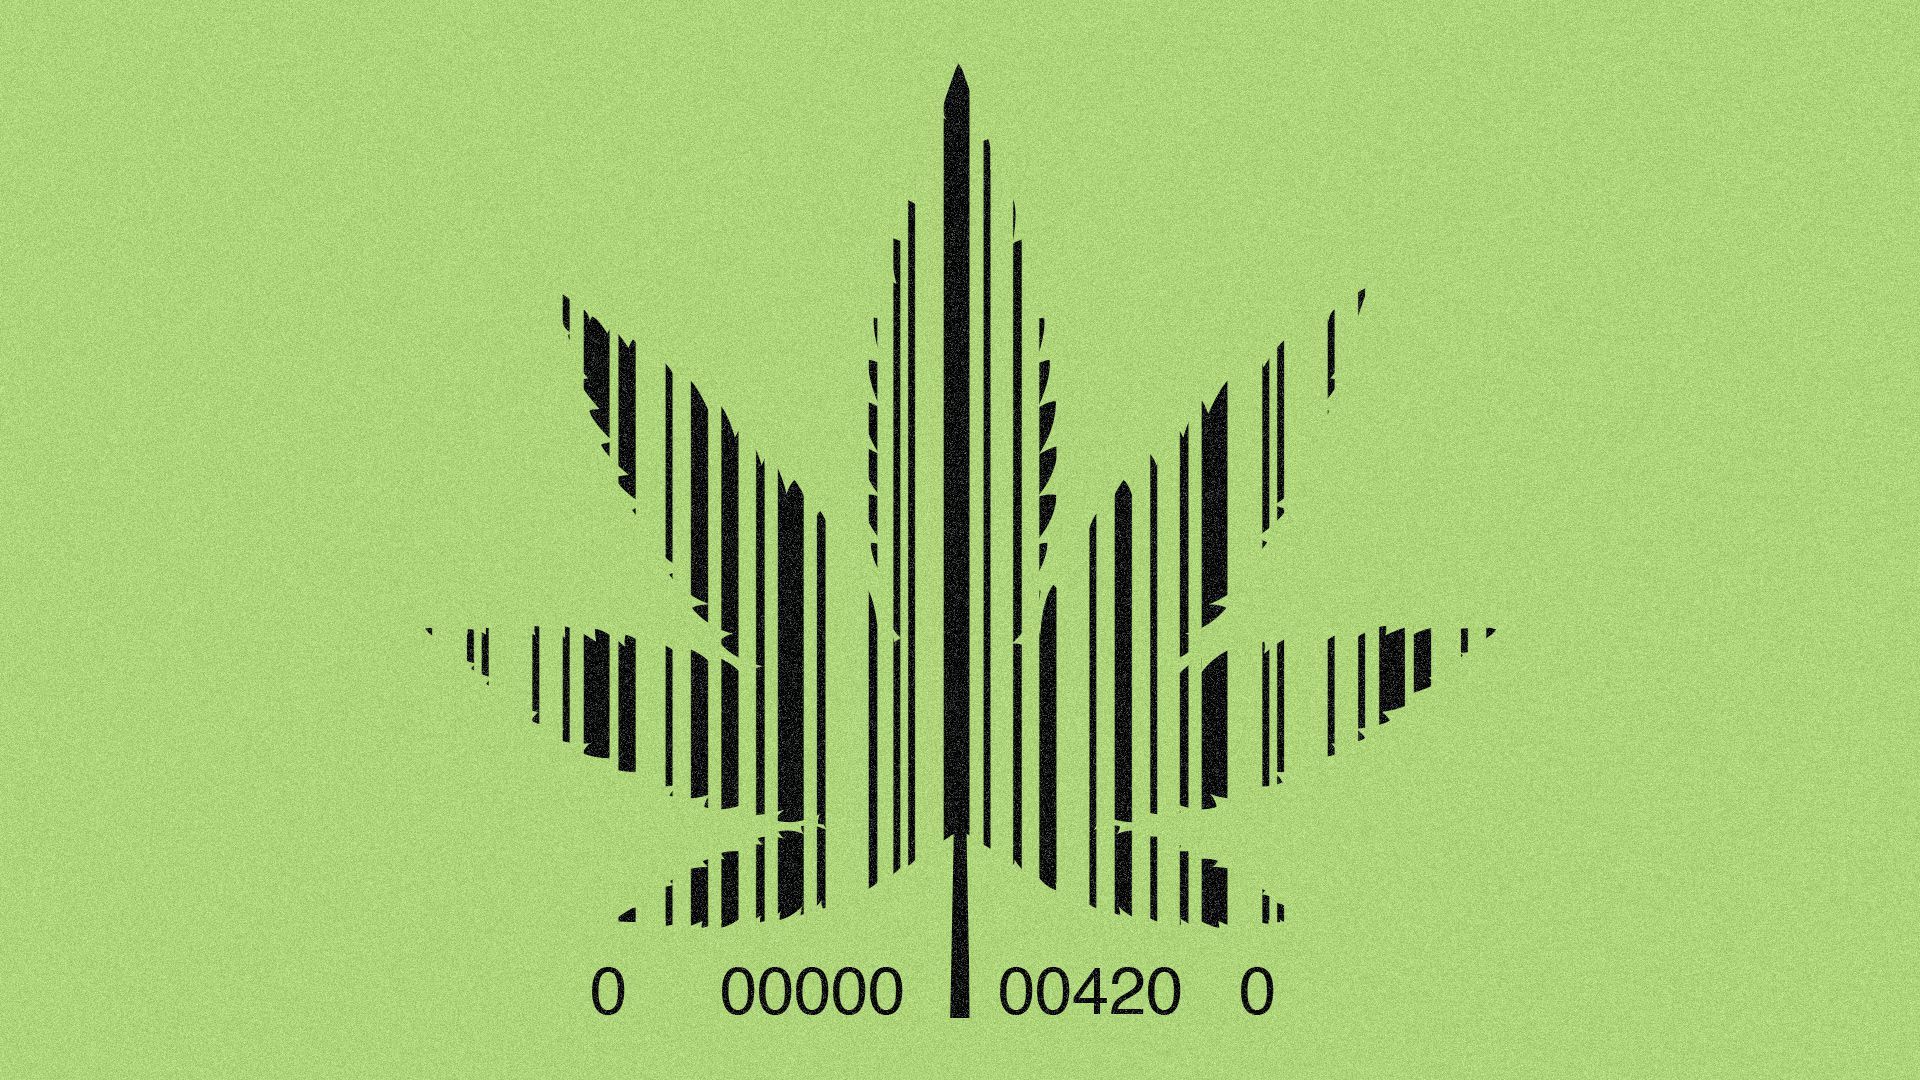 Illustration of a barcode shaped like a marijuana leaf.